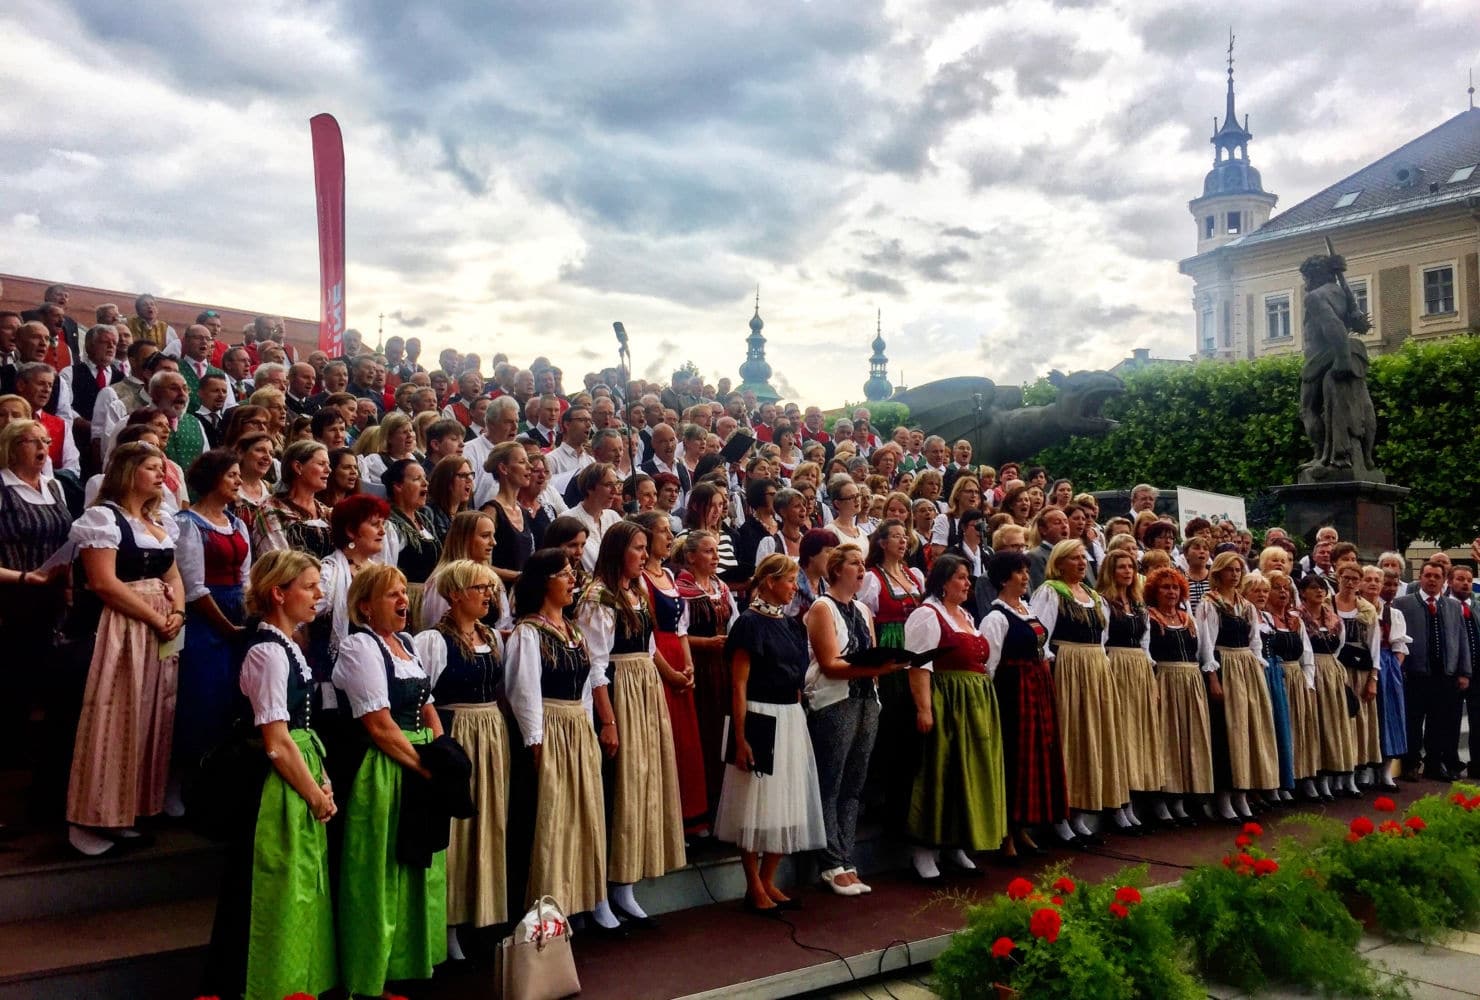 Am kommenden Sonntag, dem 8. Juli 2018, werden wieder 500 Sängerinnen und Sänger den Neuen Platz in Klagenfurt mit schönen Klängen füllen.